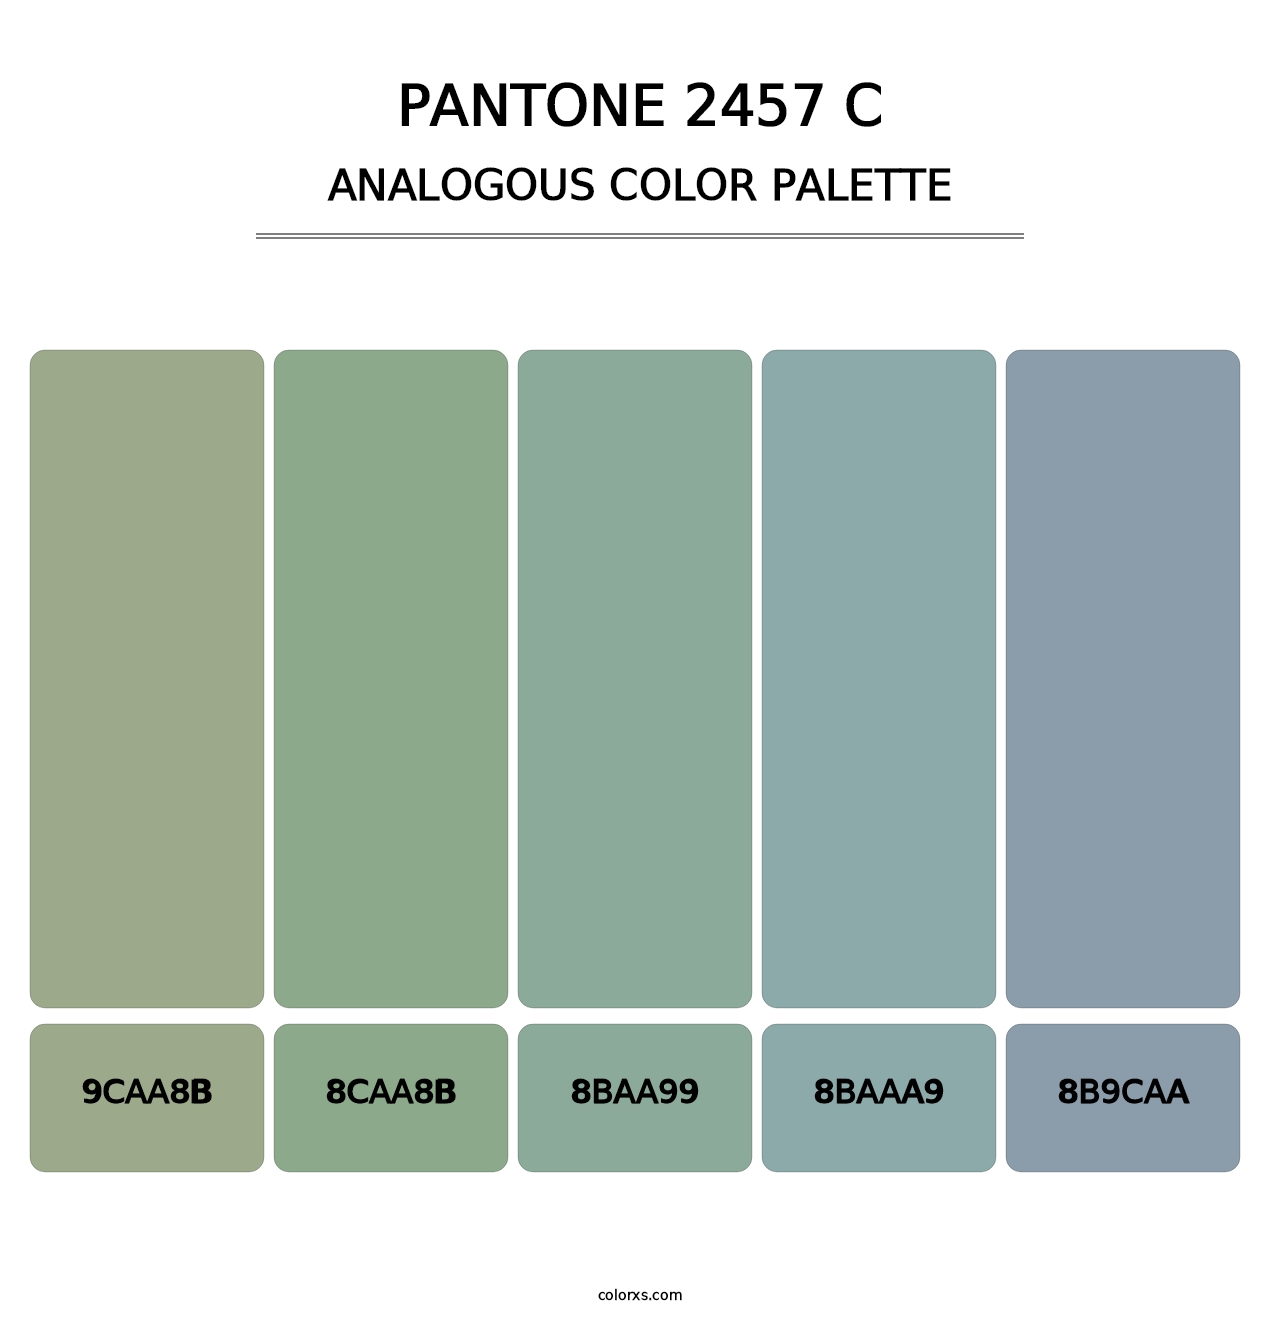 PANTONE 2457 C - Analogous Color Palette